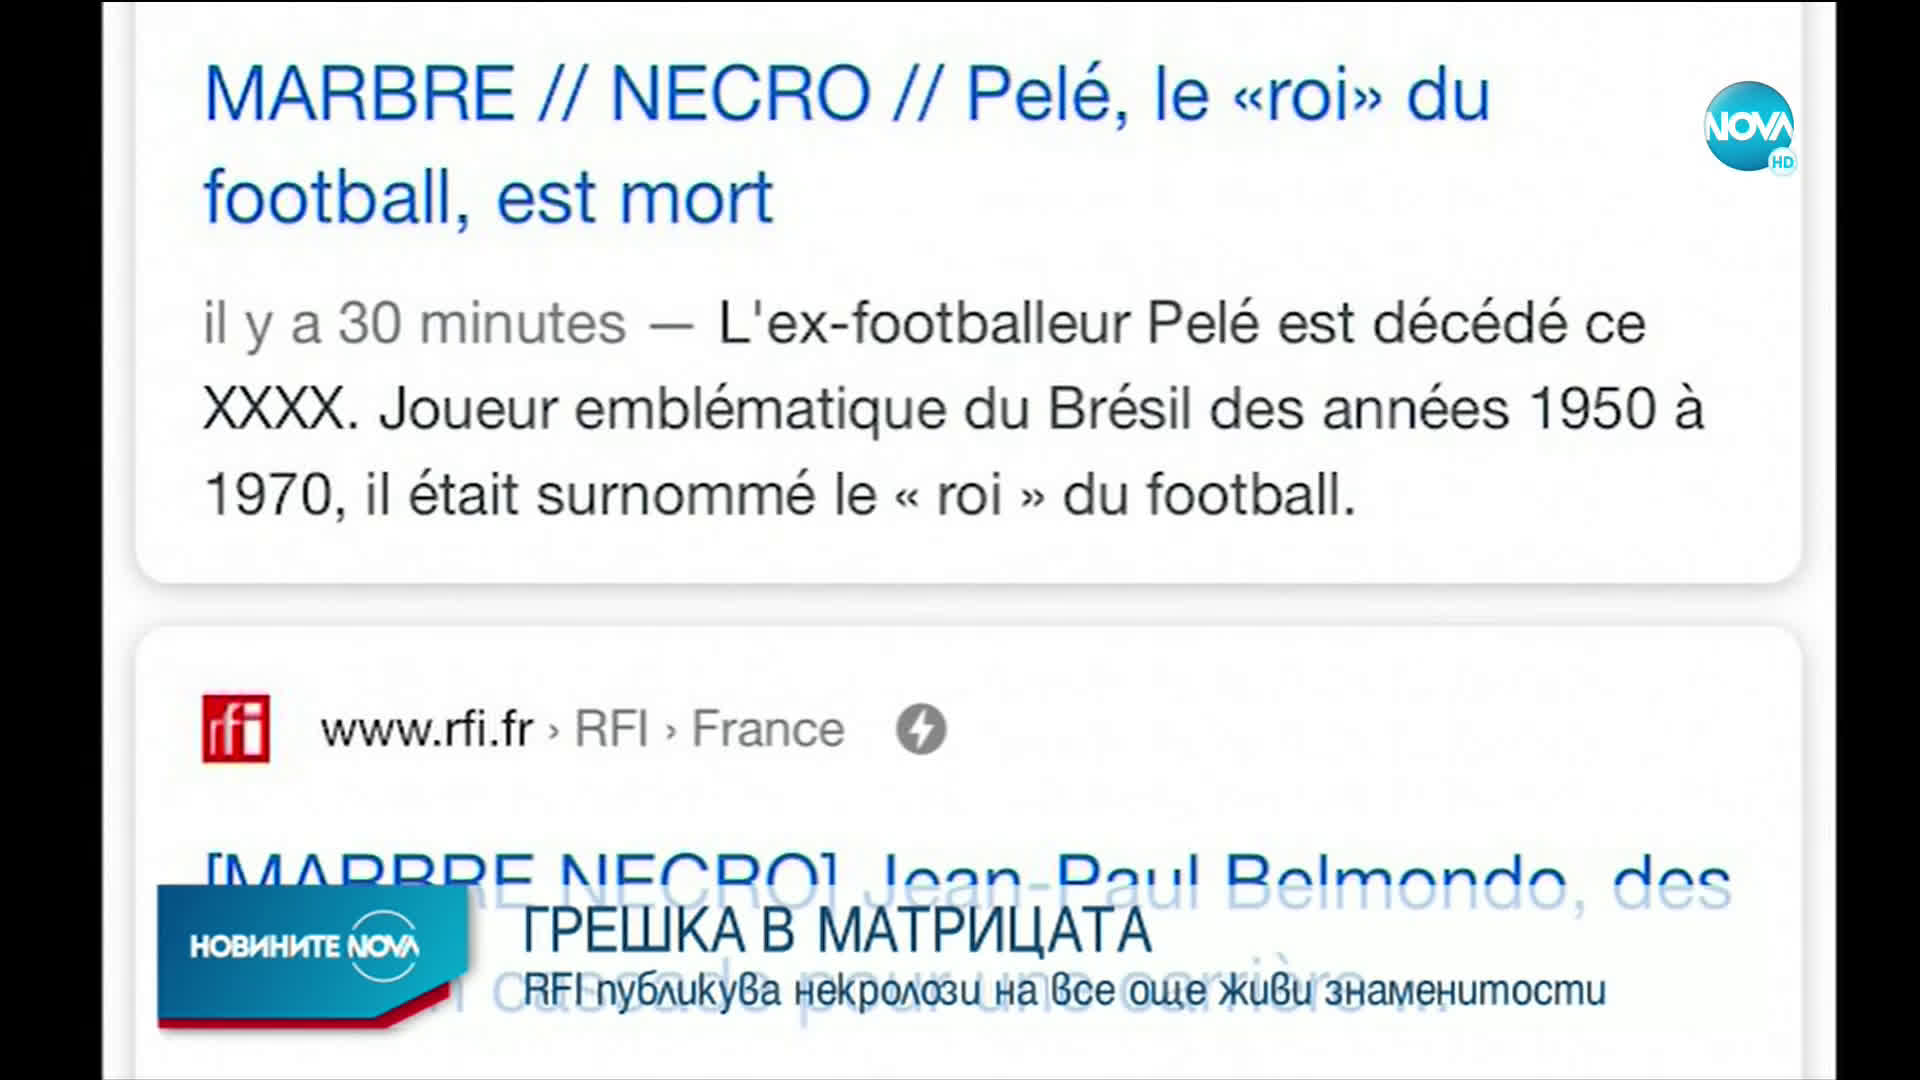 Френското радио RFI се извини за погрешното публикуване на некролози на популярни световни личности